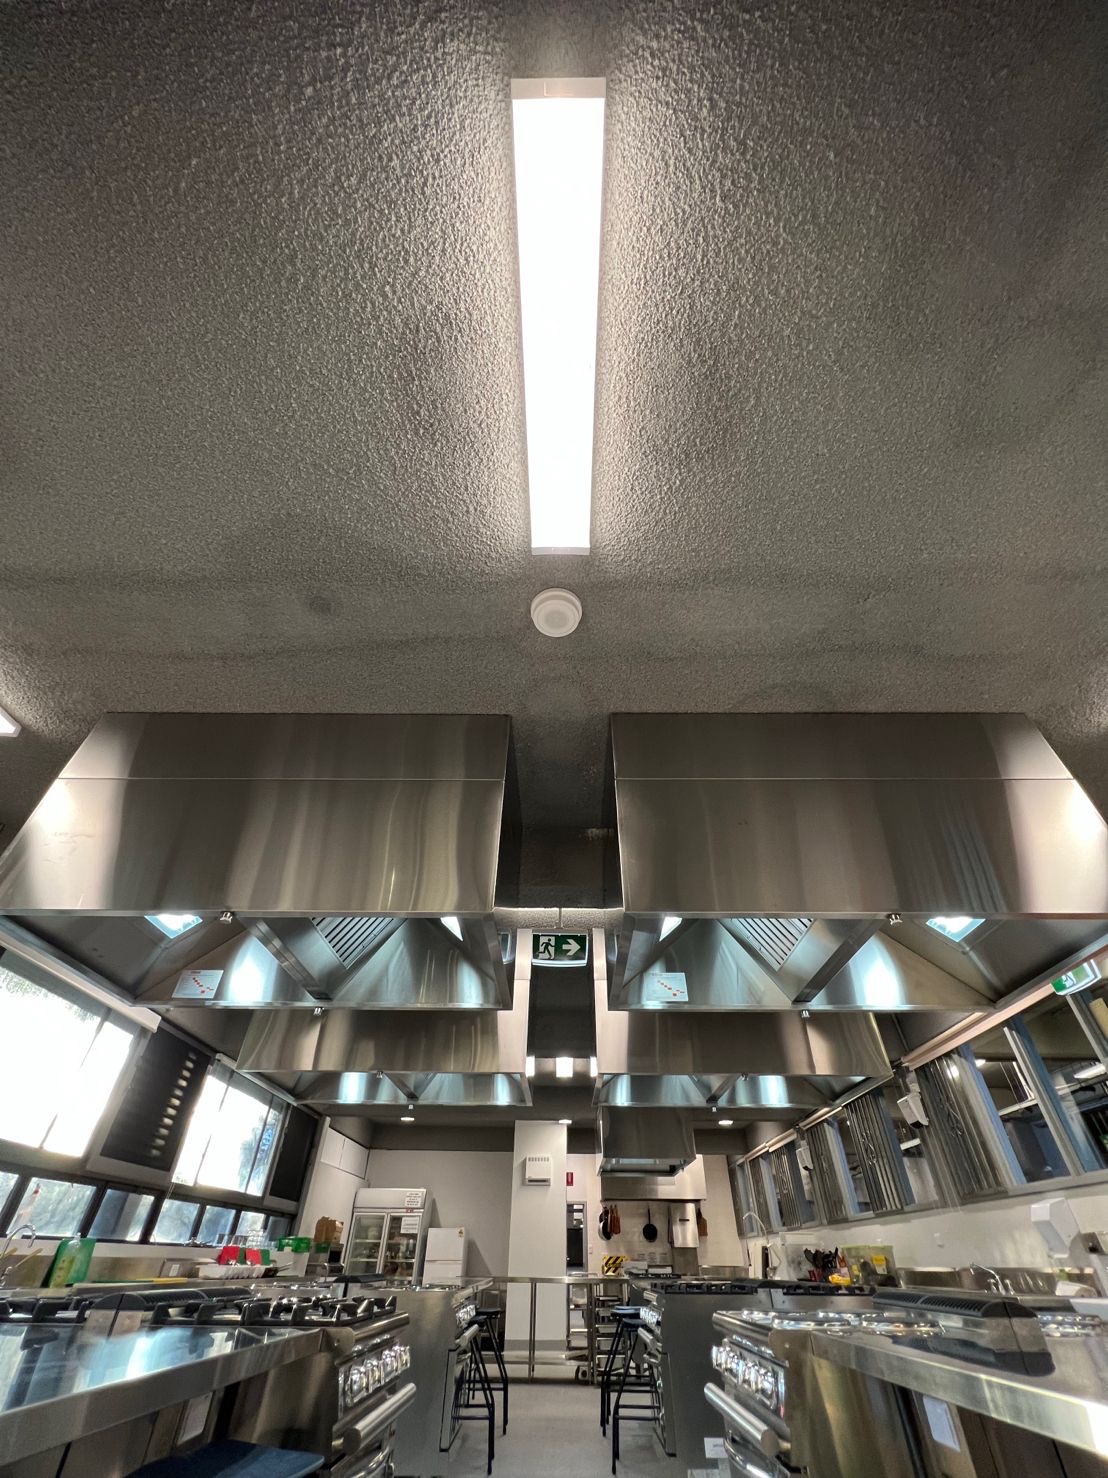 Kitchen Ventilation & Stainless Steel Supplies For Schools